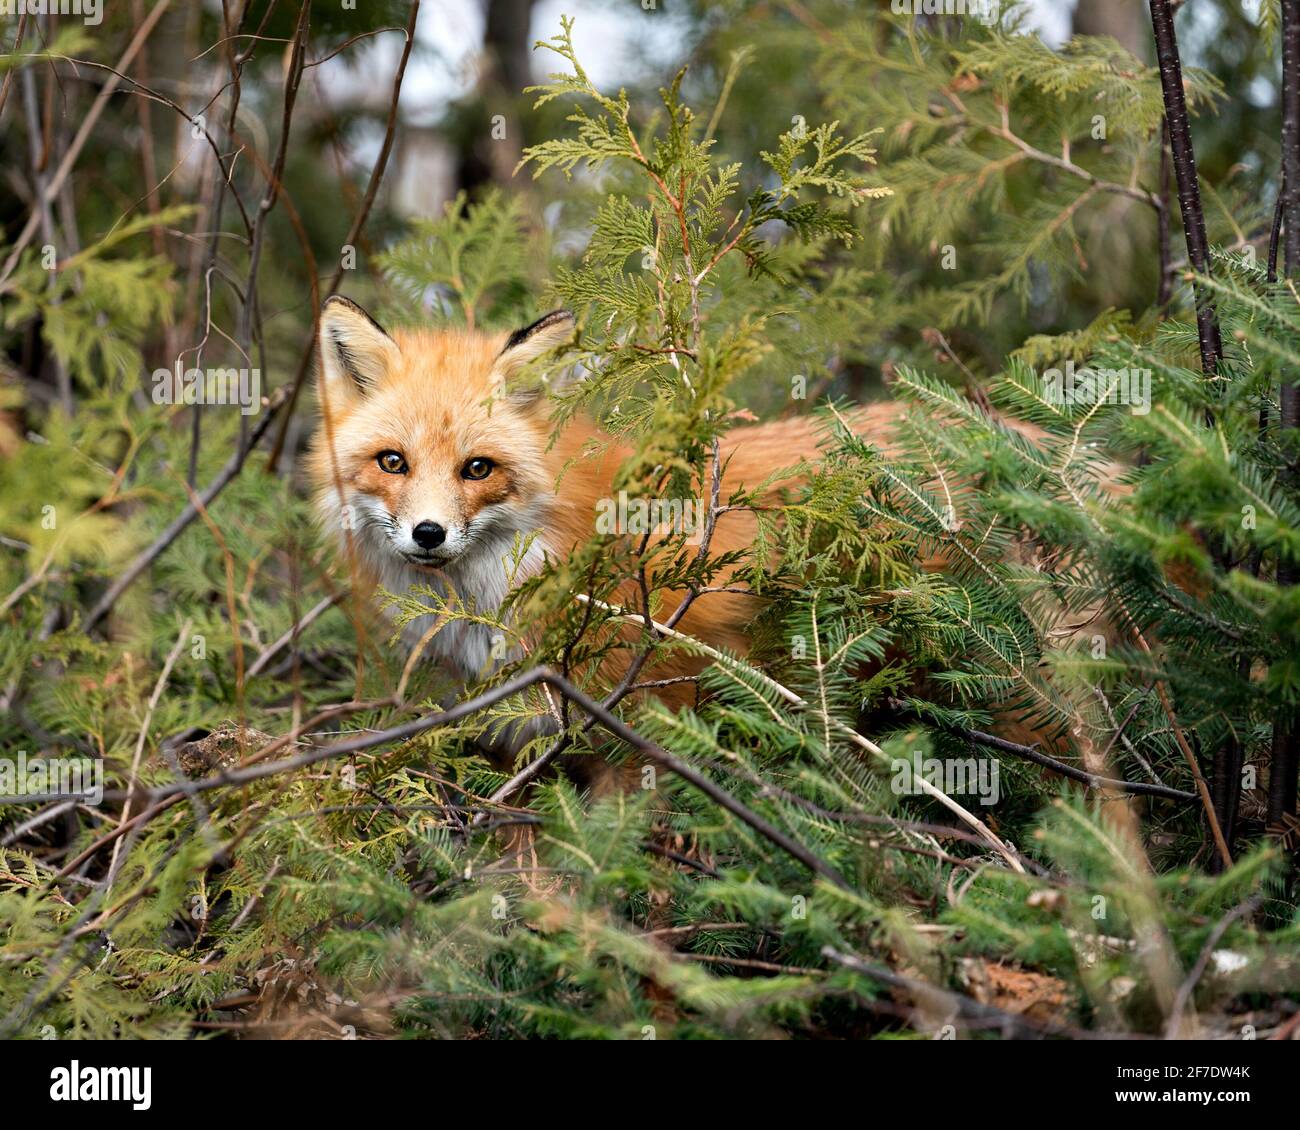 Vista ravvicinata della testa di Red Fox guardando la telecamera con alberi di conifere in primo piano nel suo ambiente e habitat. Colpo di testa. Immagine. Verticale. F Foto Stock